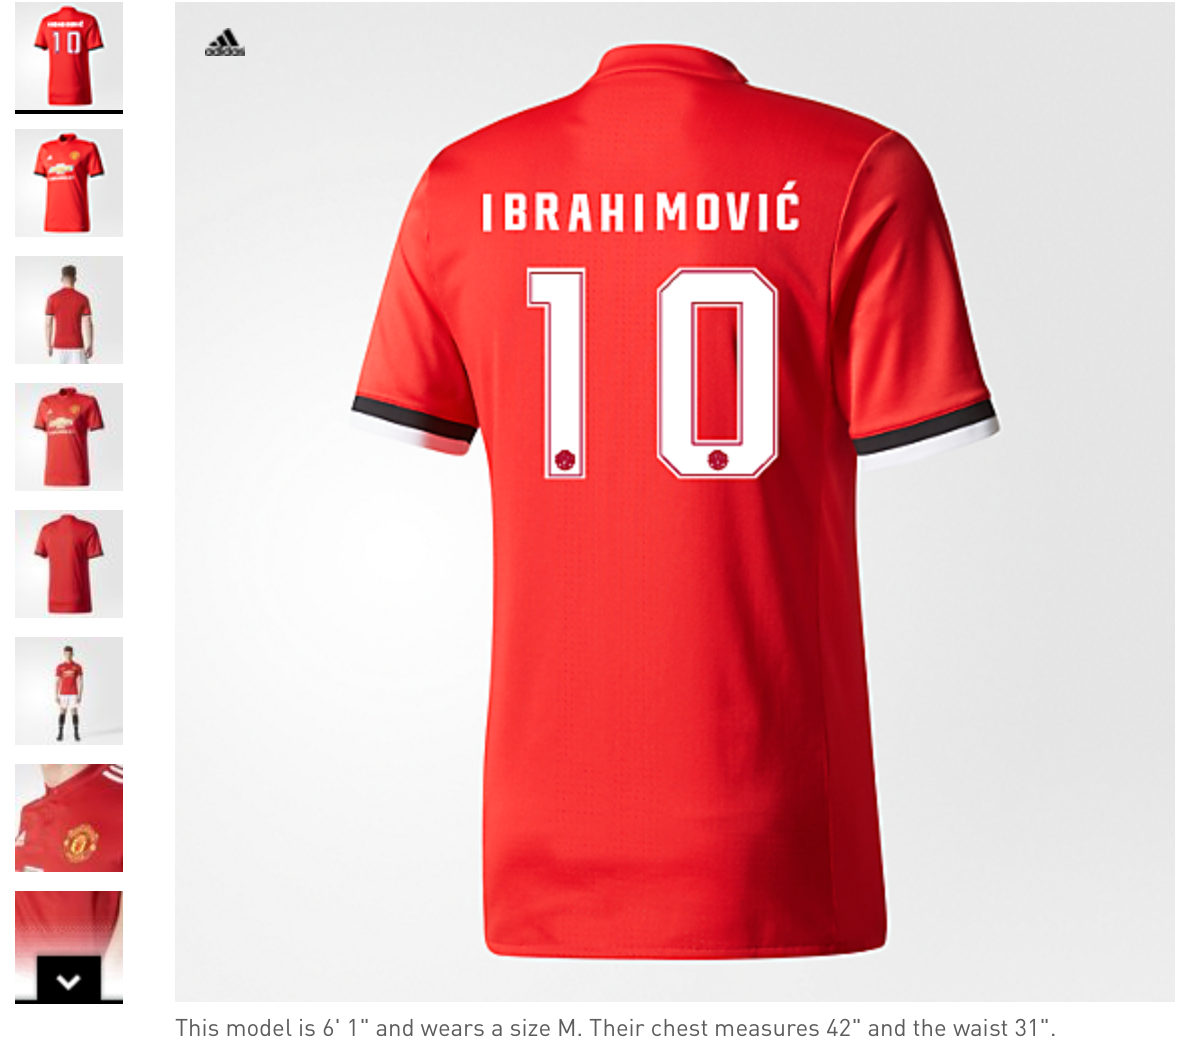 Tröjan som går att beställa från Adidas officiella hemsida.